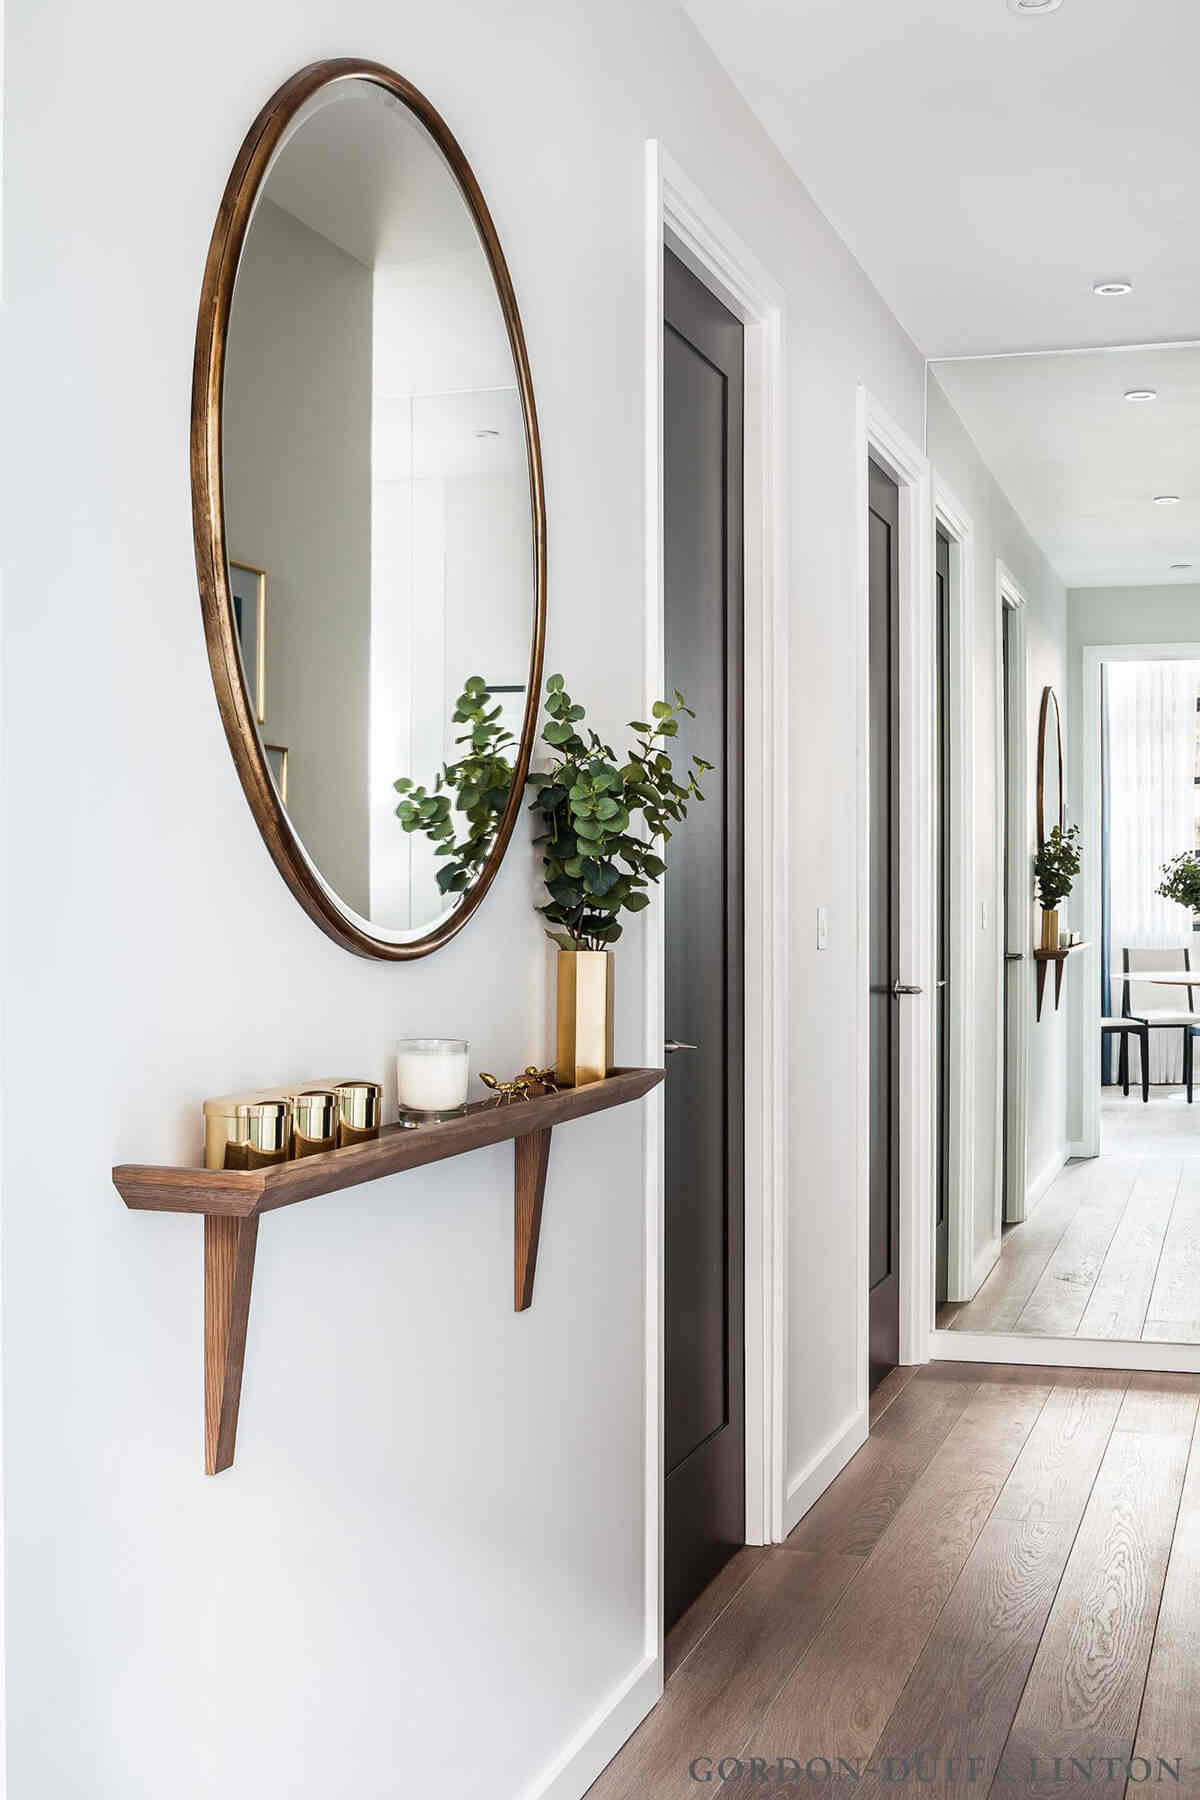 10 Desain Cermin untuk Hiasan Dinding Rumah, Energi Positif